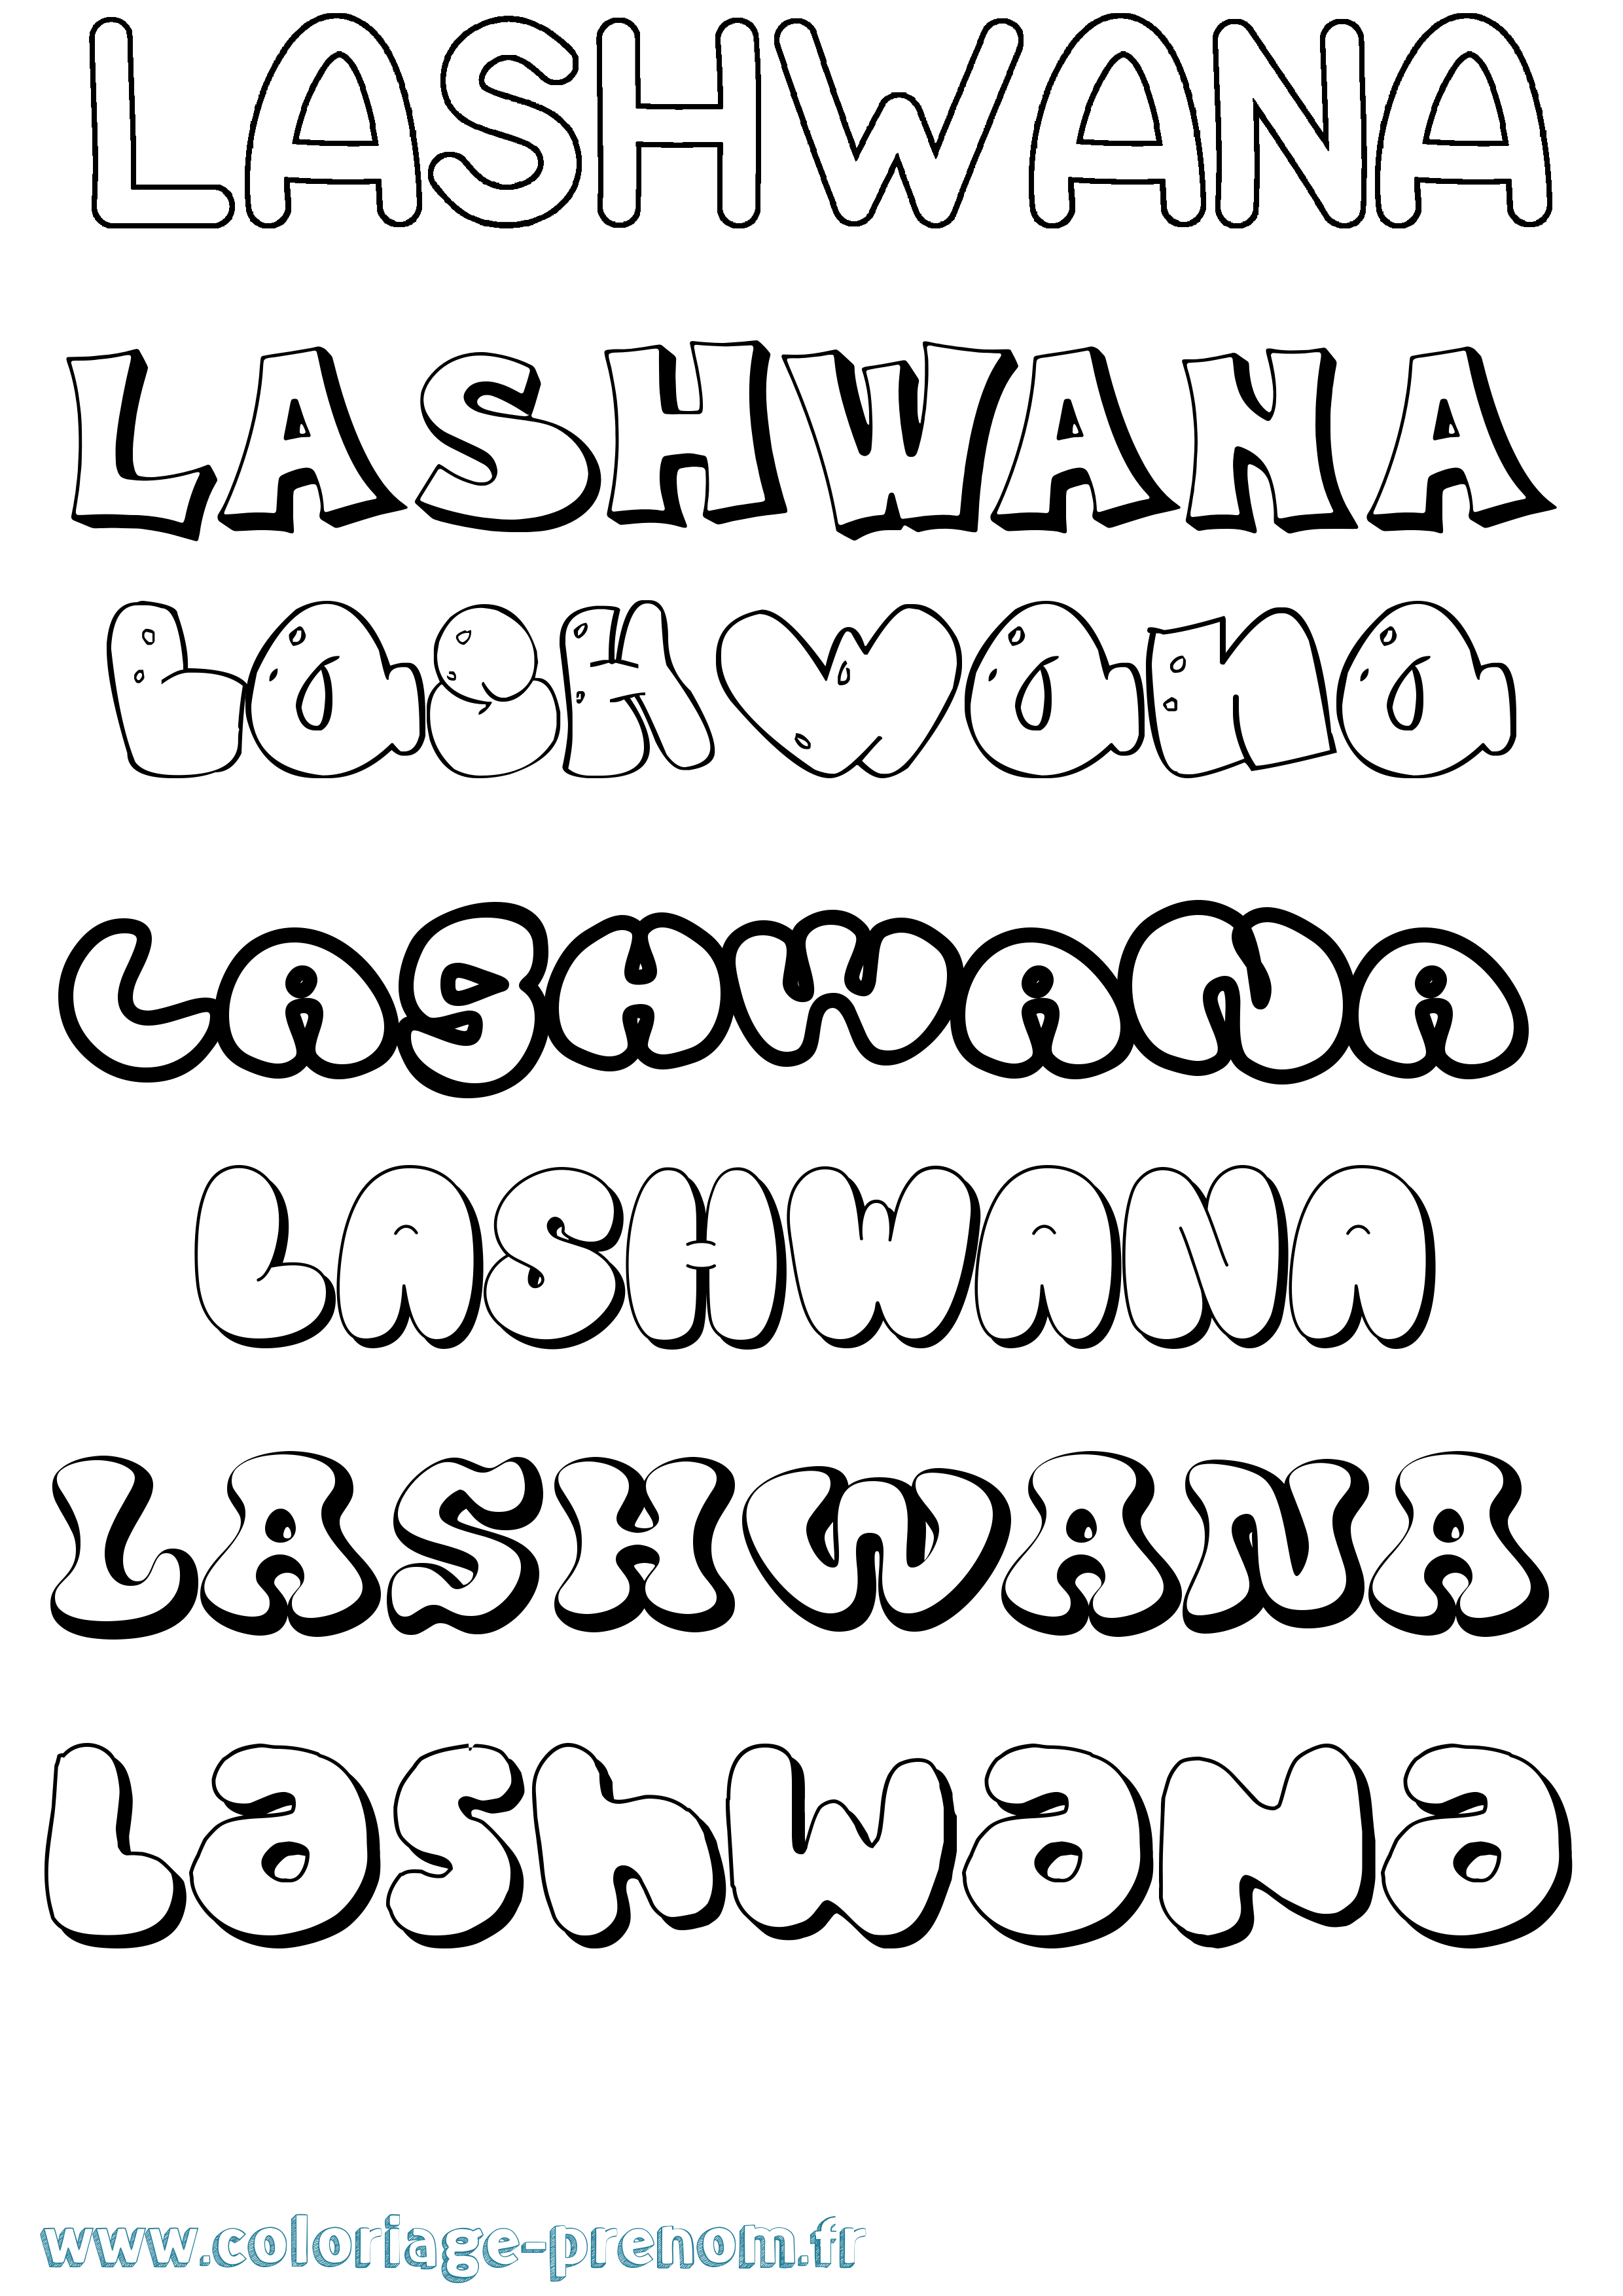 Coloriage prénom Lashwana Bubble